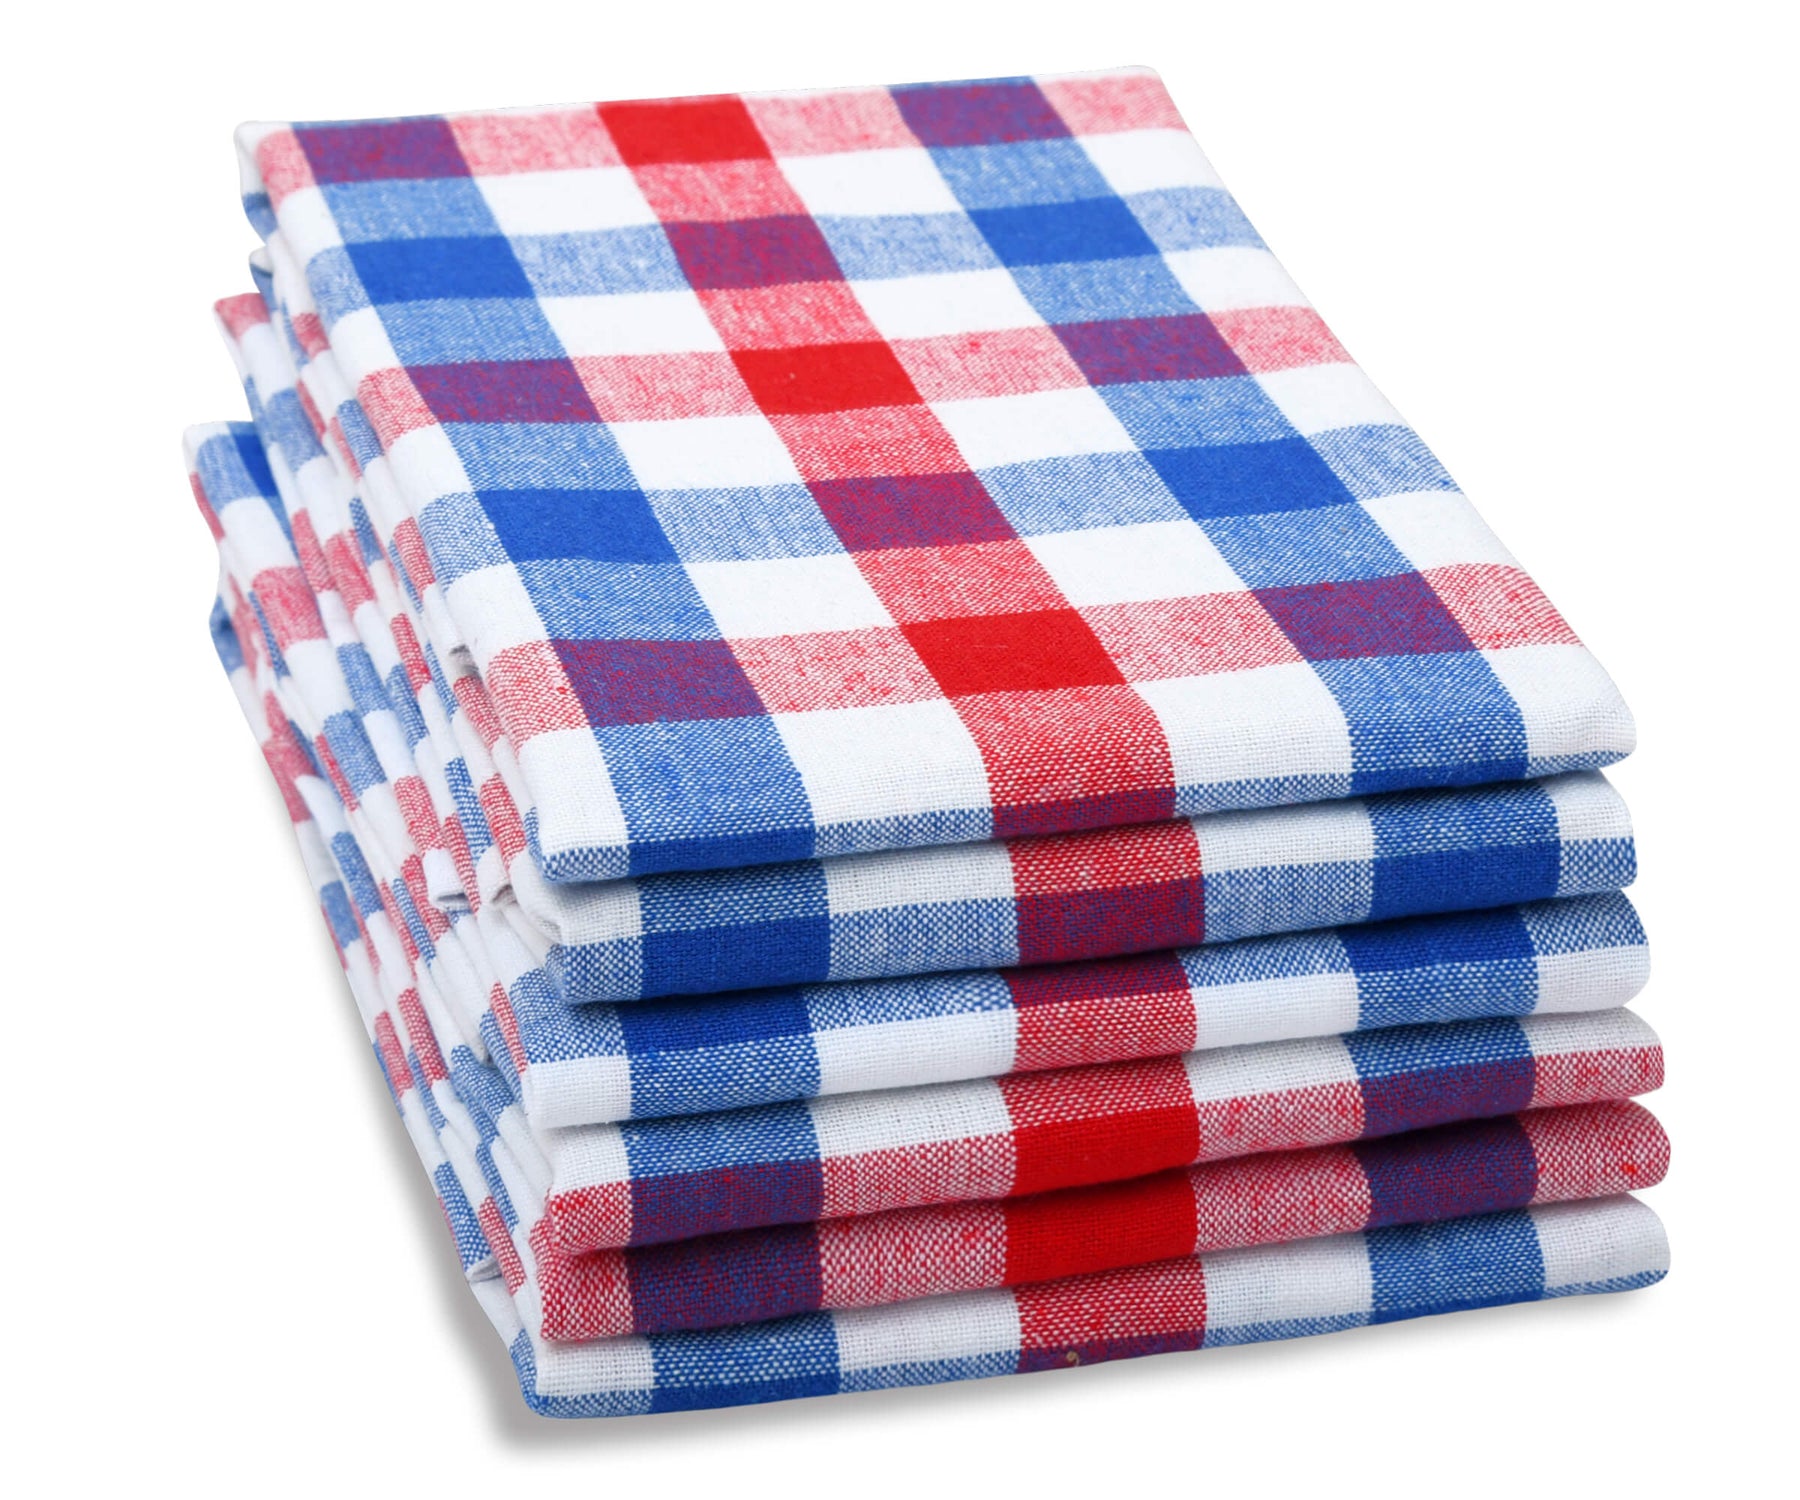 https://www.allcottonandlinen.com/cdn/shop/products/Harvest-Red-Blue-White-Towel-1_1_1800x.jpg?v=1692181315